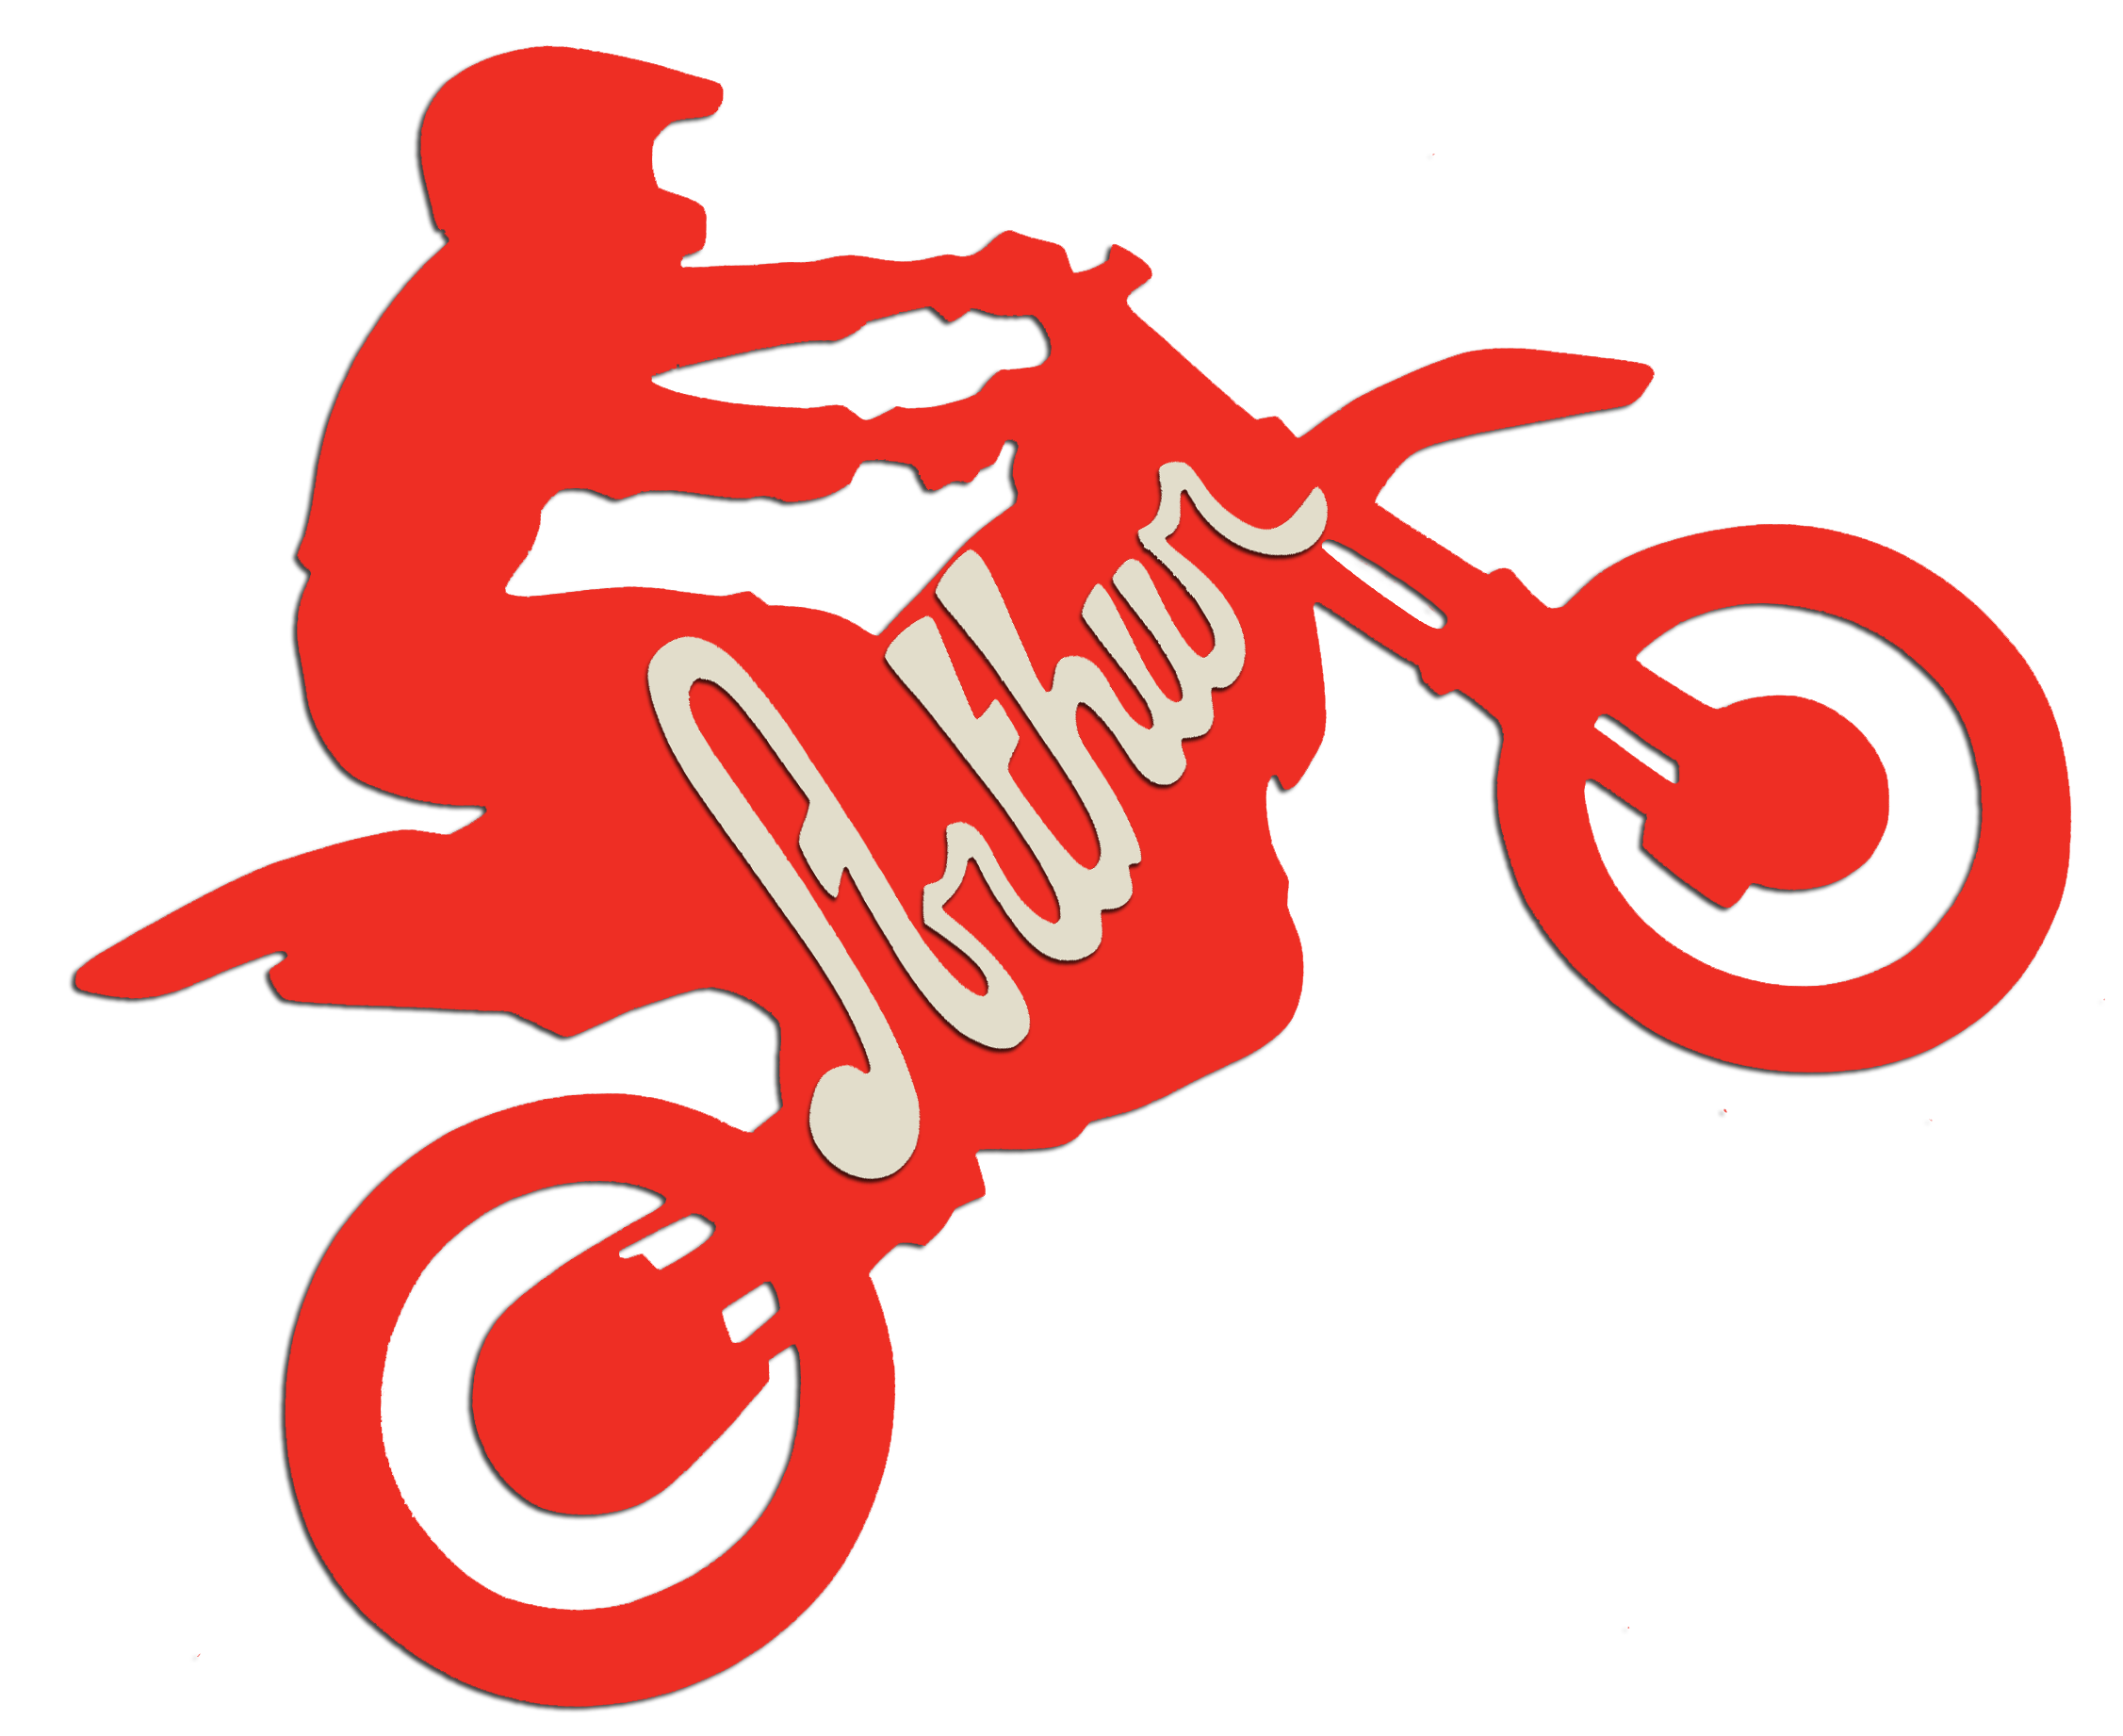 Plaque de porte en bois forme motocross pour enfant couleur au choix  Prénom Personnalisable